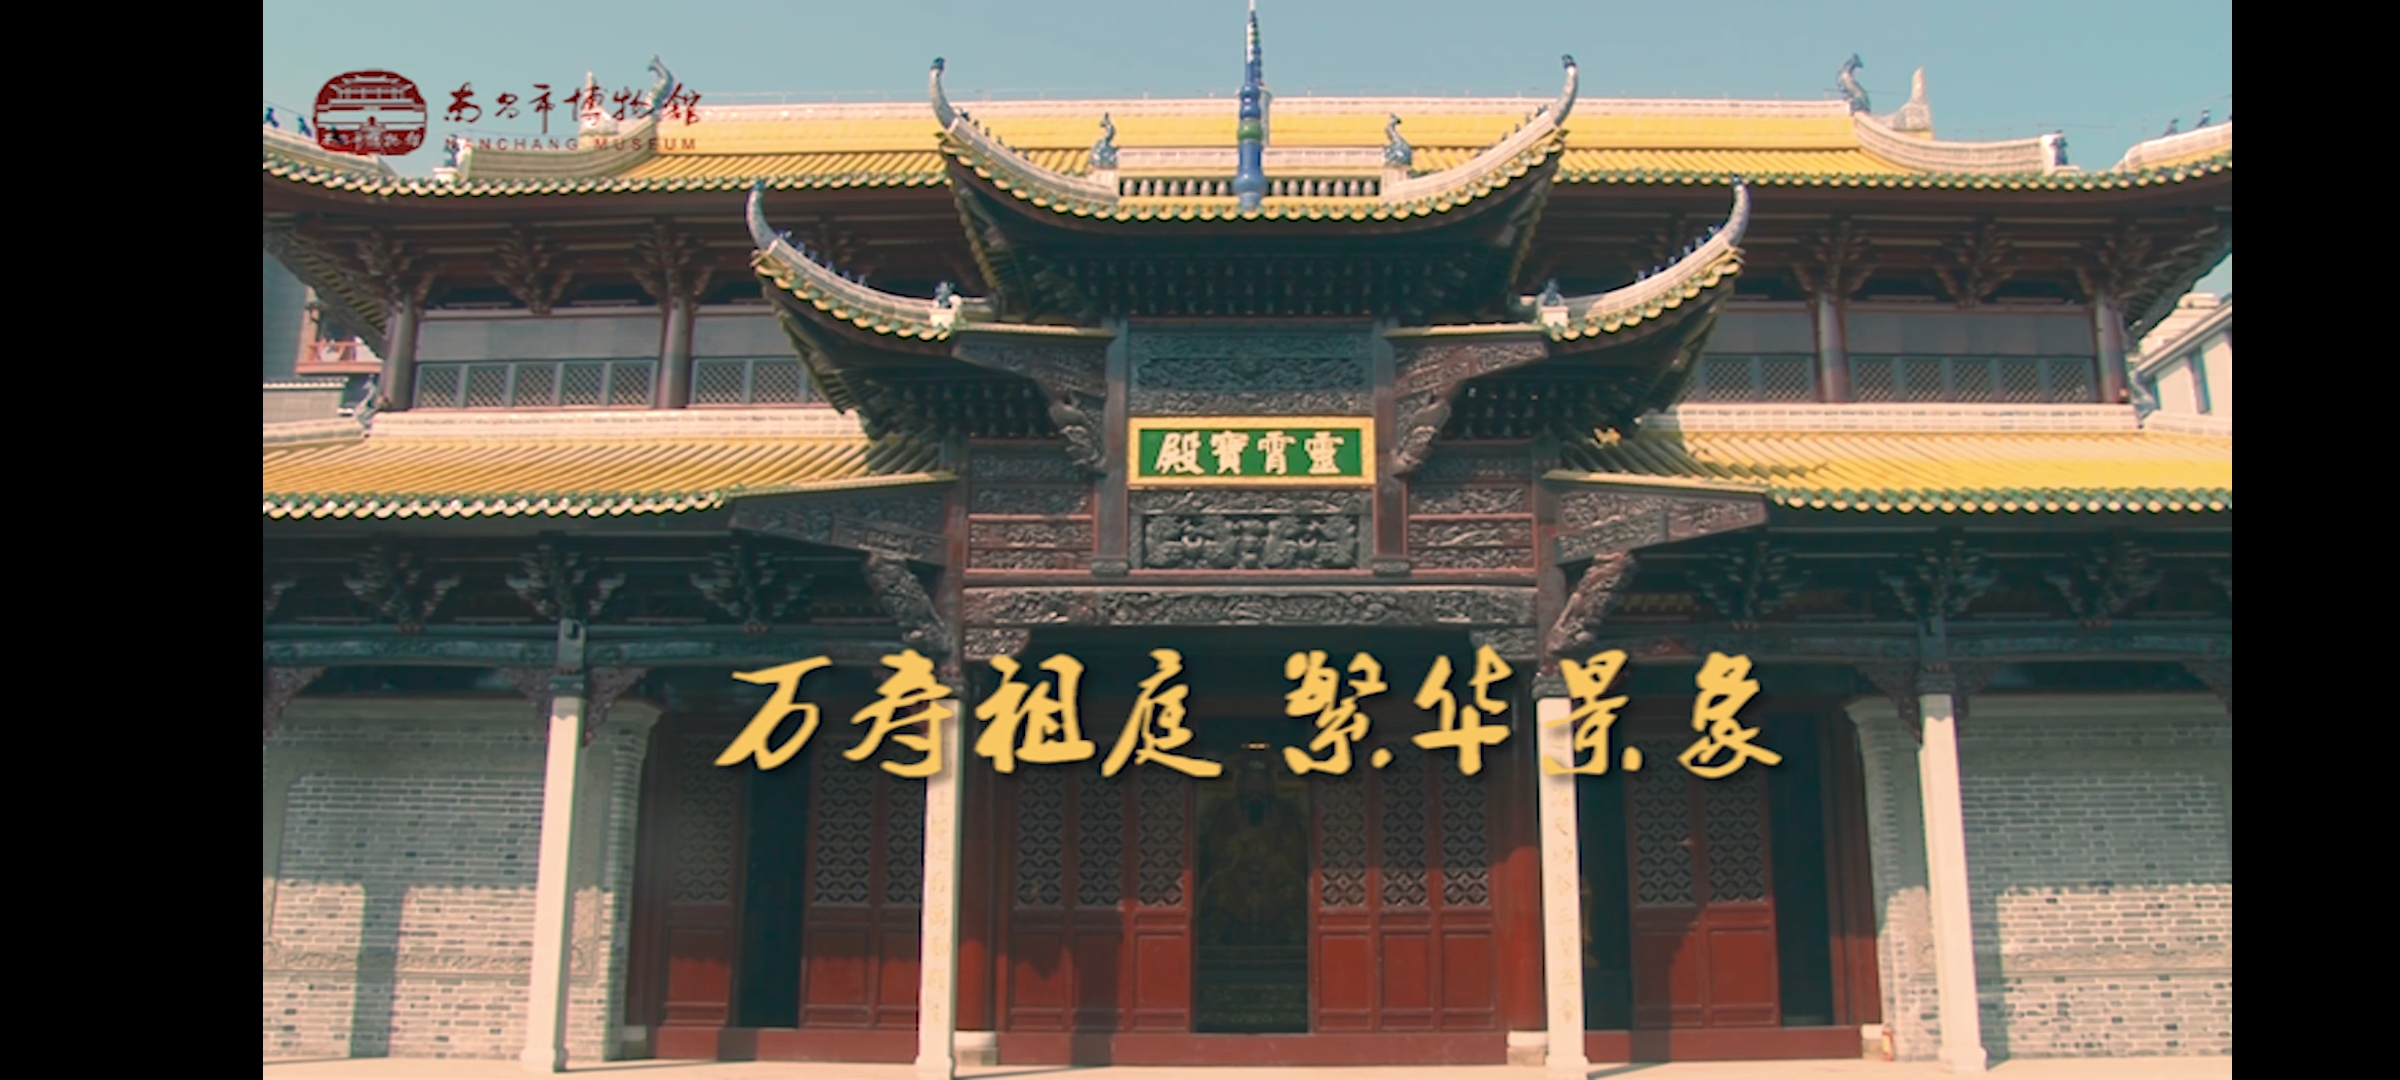 第一期“千年豫章 · 城市记忆”系列节目《万寿祖庭 · 繁华景象》